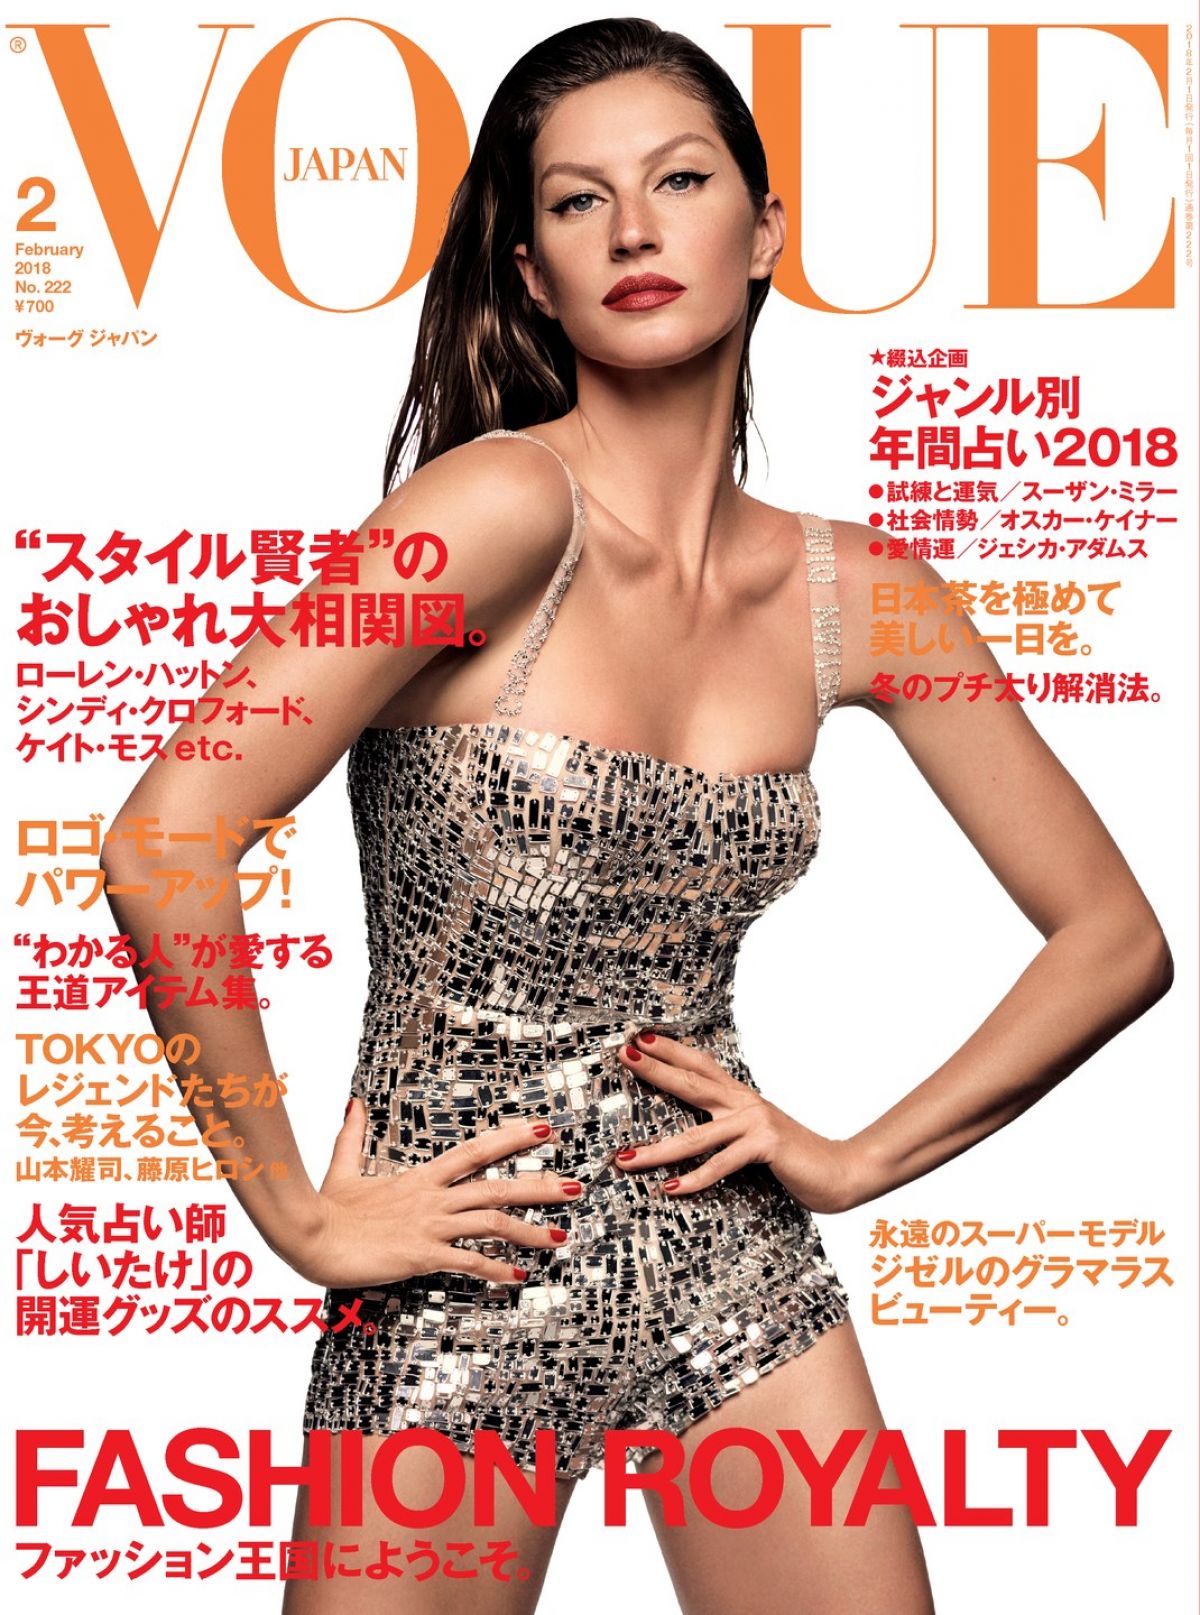 GISELE BUNDCHEN in Vogue Magazine, Japan February 2017 Issue